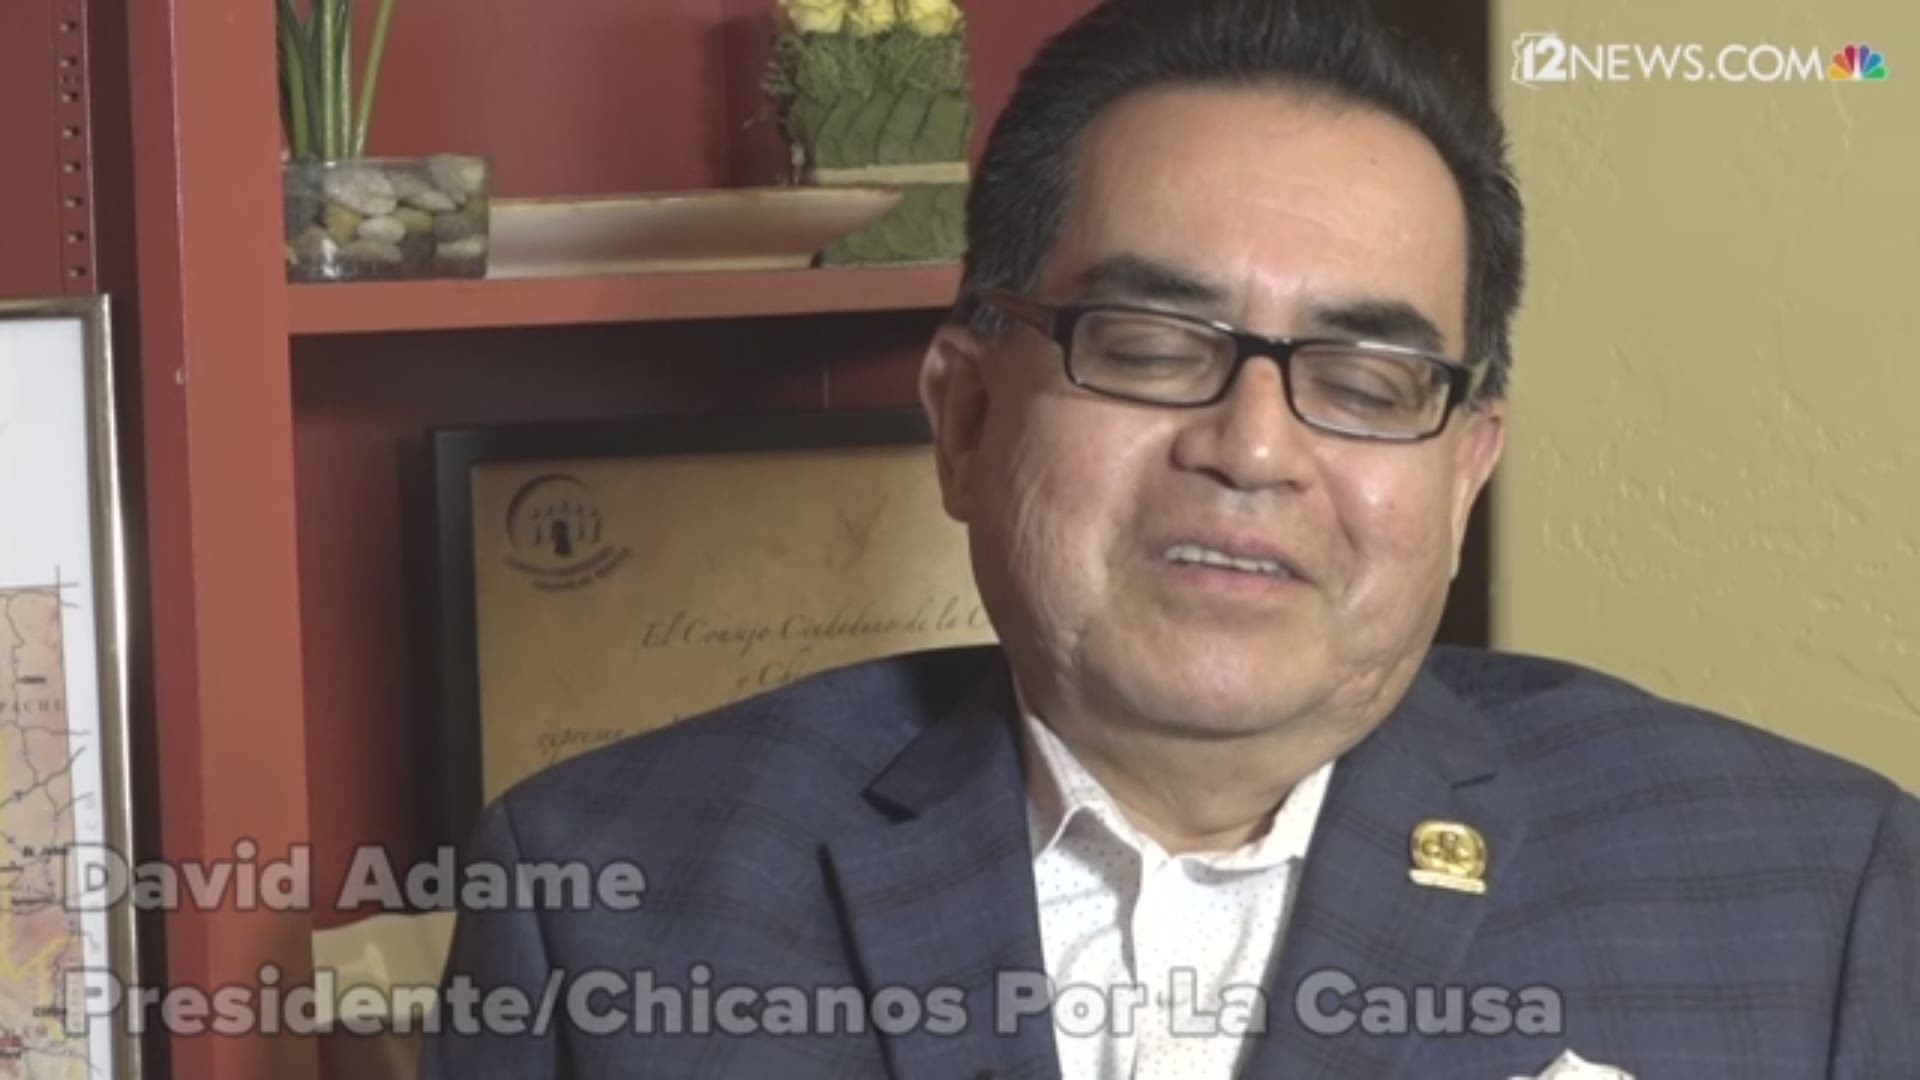 David Adame, presidente de Chicanos Por La Causa habla del movimiento que dio inicio a cinco décadas de apoyo a la comunidad.